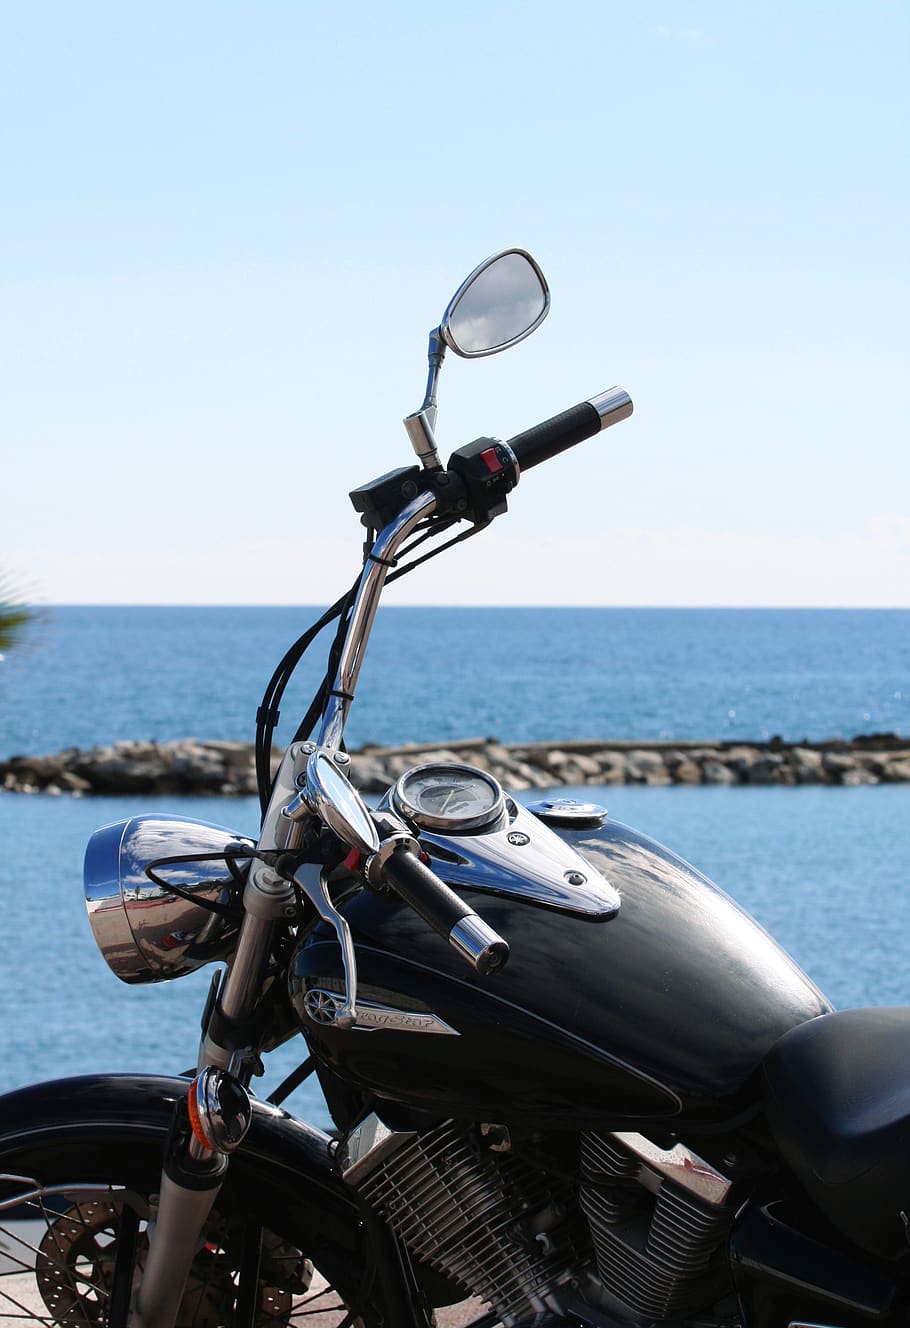 motocicleta, mar, playa, el espejo retrovisor, en espera, agua, yamaha, dibujar una estrella, transporte, modo de transporte